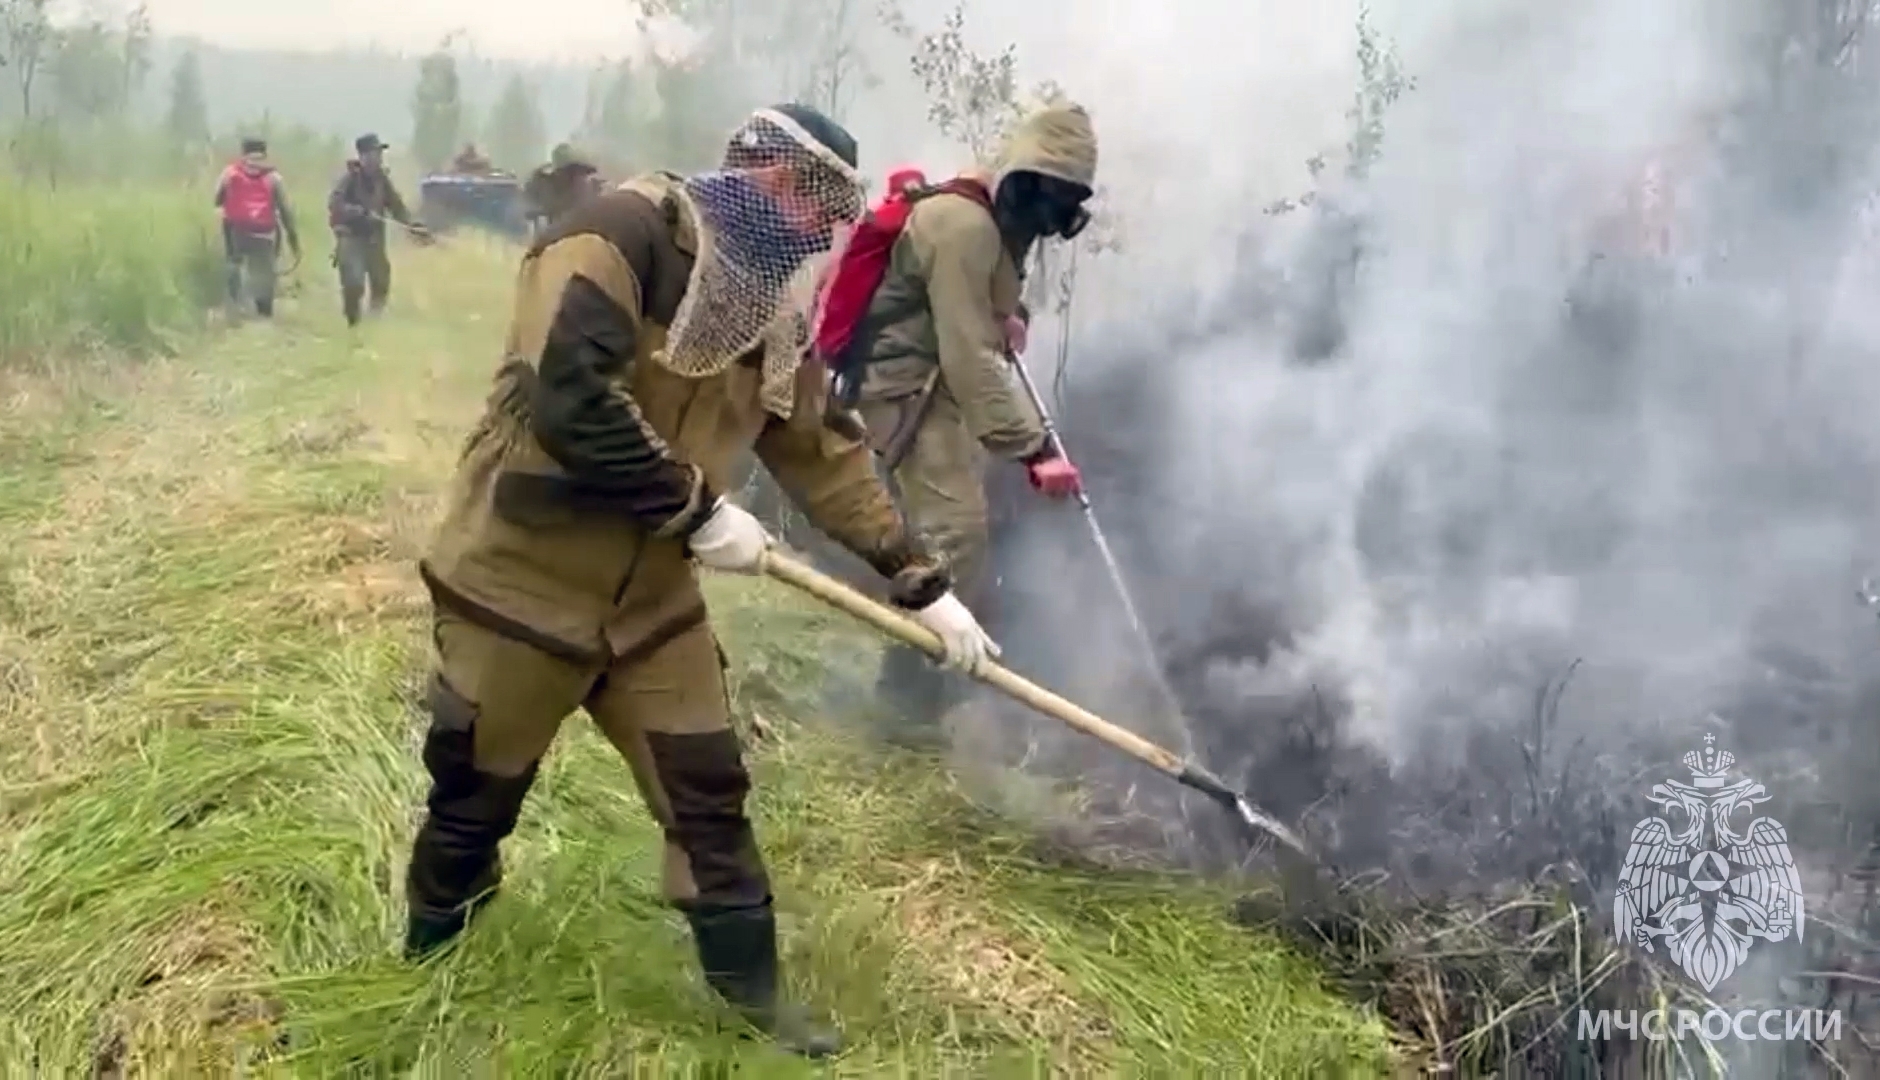 حرائق الغابات في ياقوتيا بروسيا تقترب من مستودع نفط كبير (فيديو)